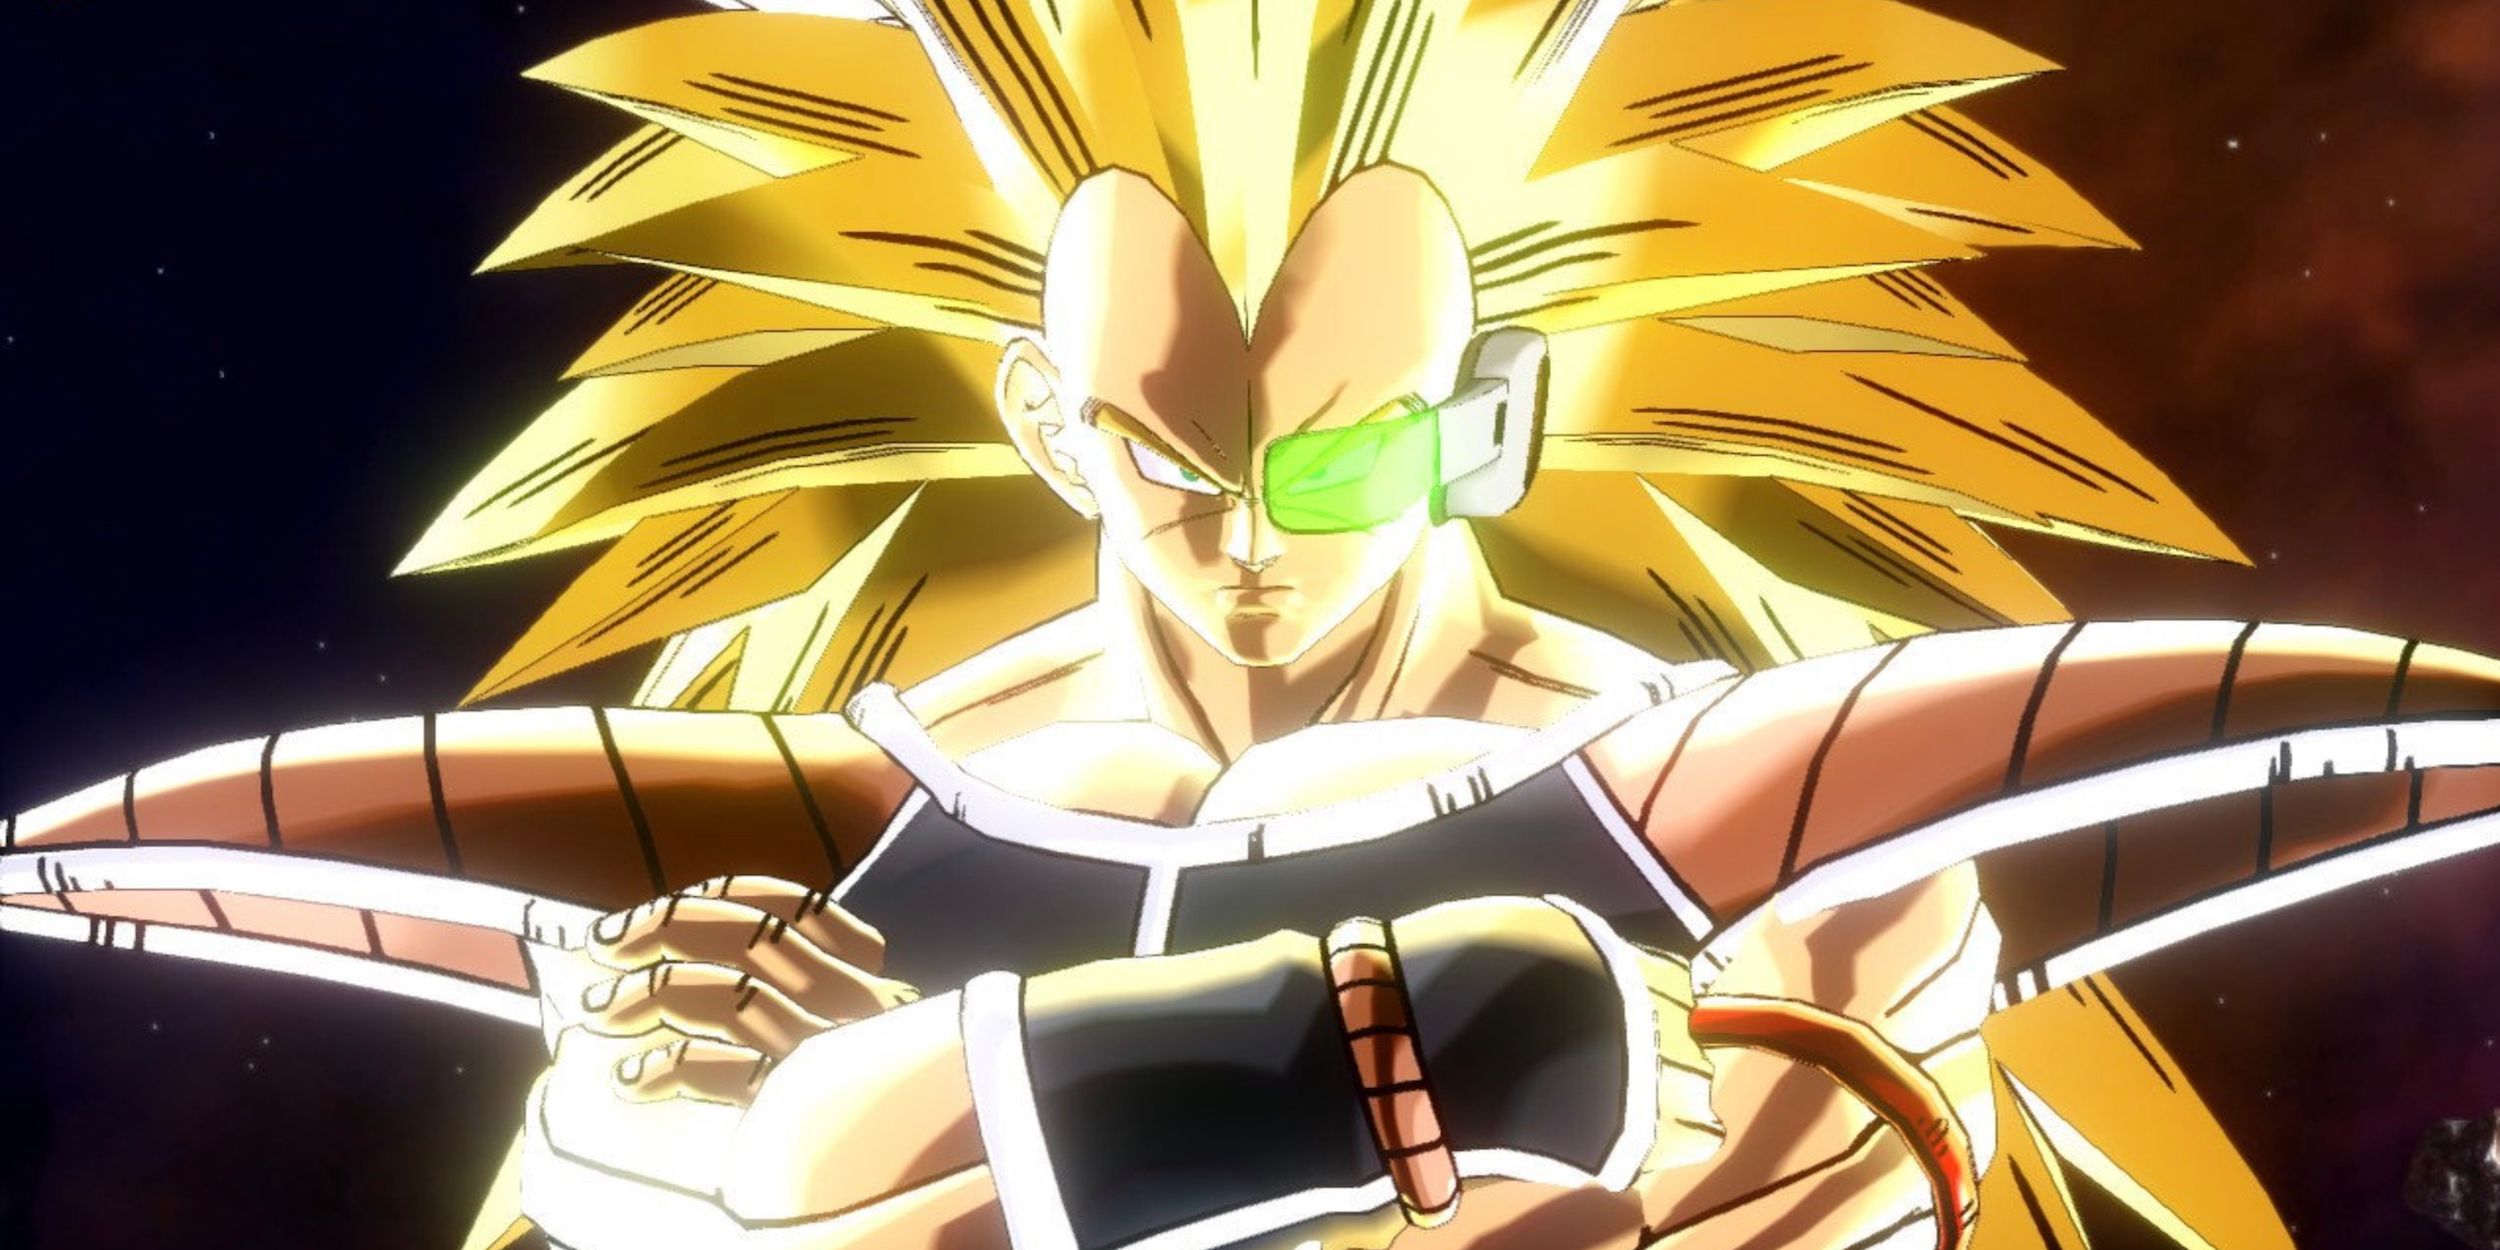 Raditz, irmão de Goku, se transforma em Super Saiyajin 3 no mangá